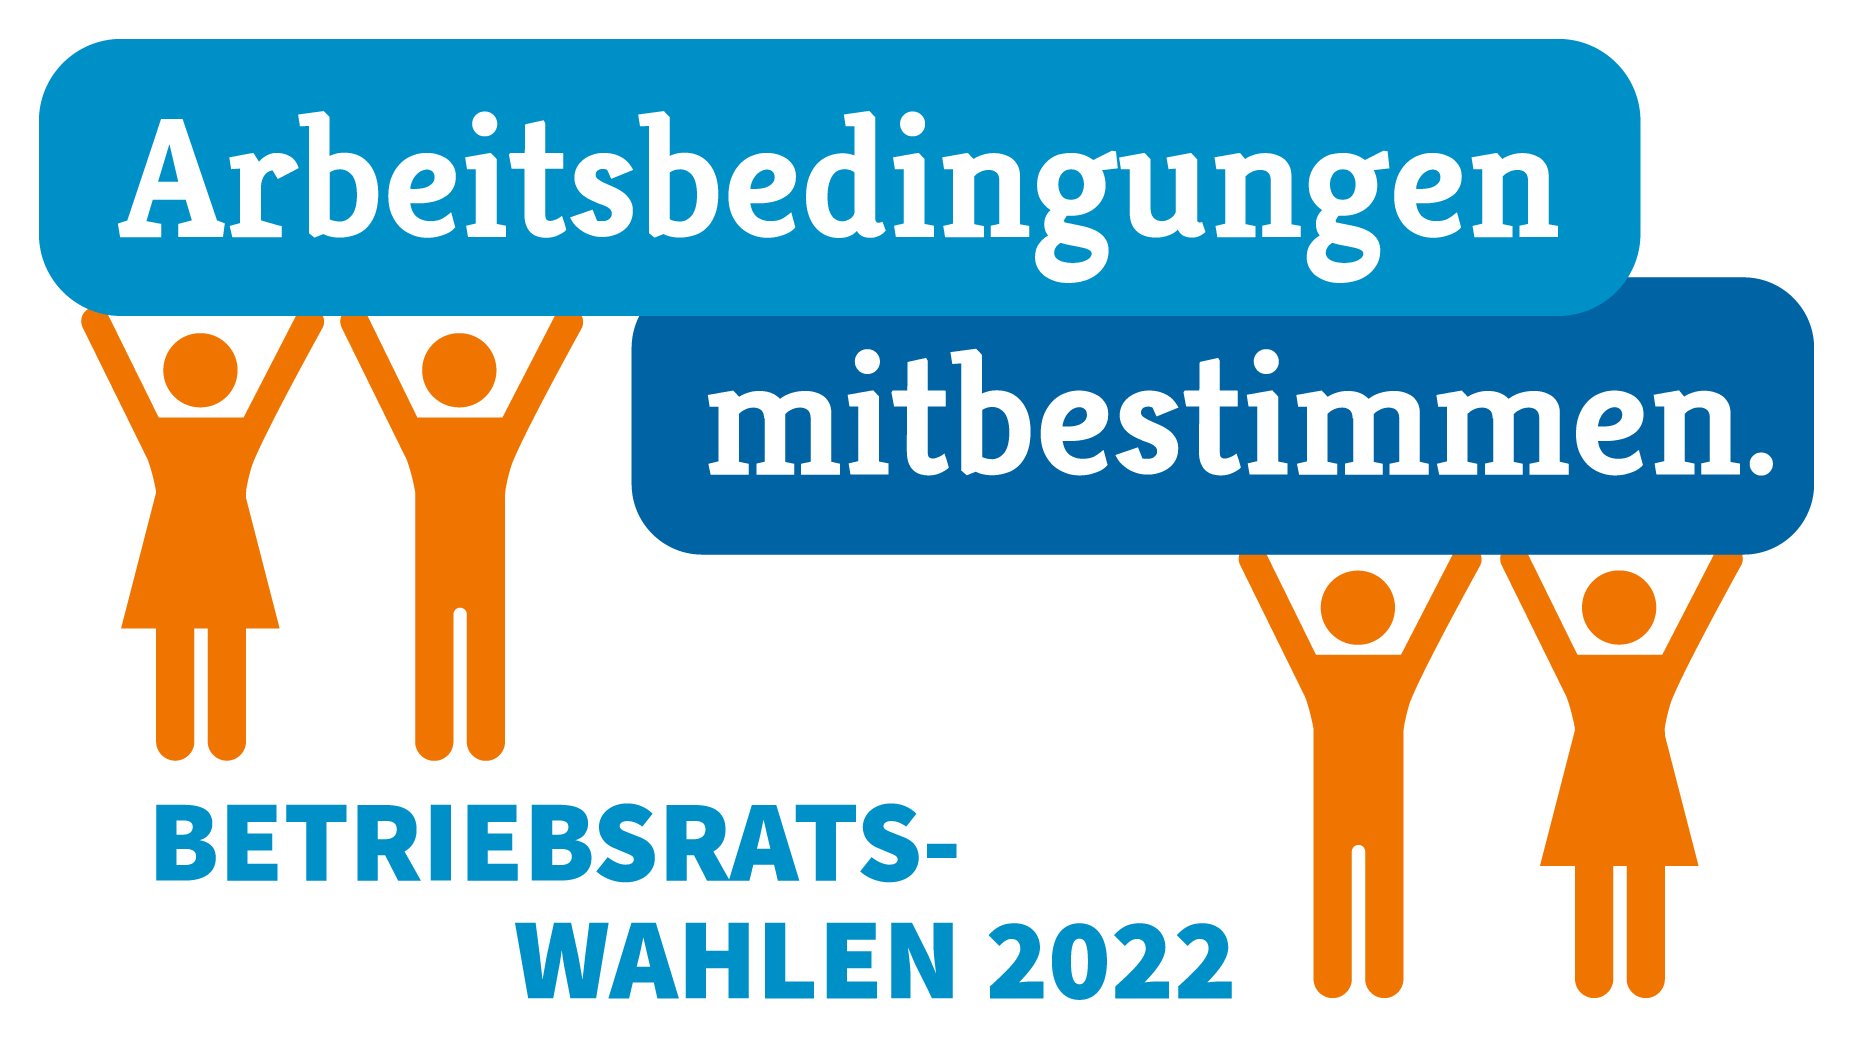 Betriebsratswahlen 2022 Wort-Bild-Marke